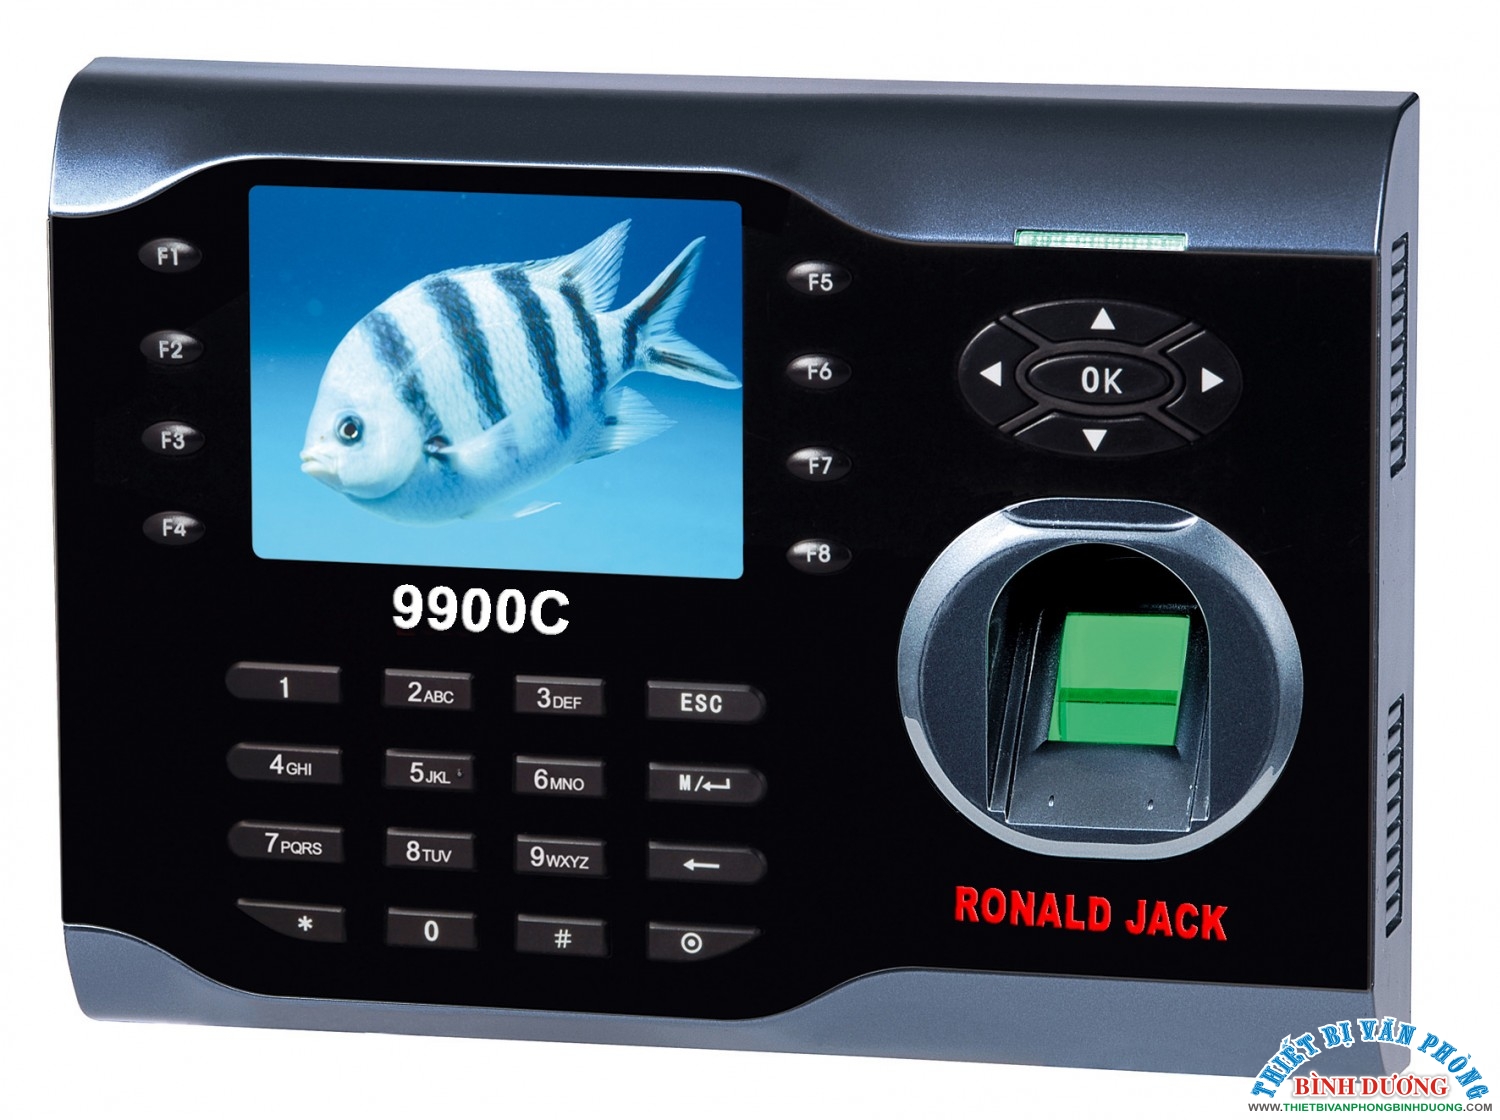 RONALD JACK 9900C